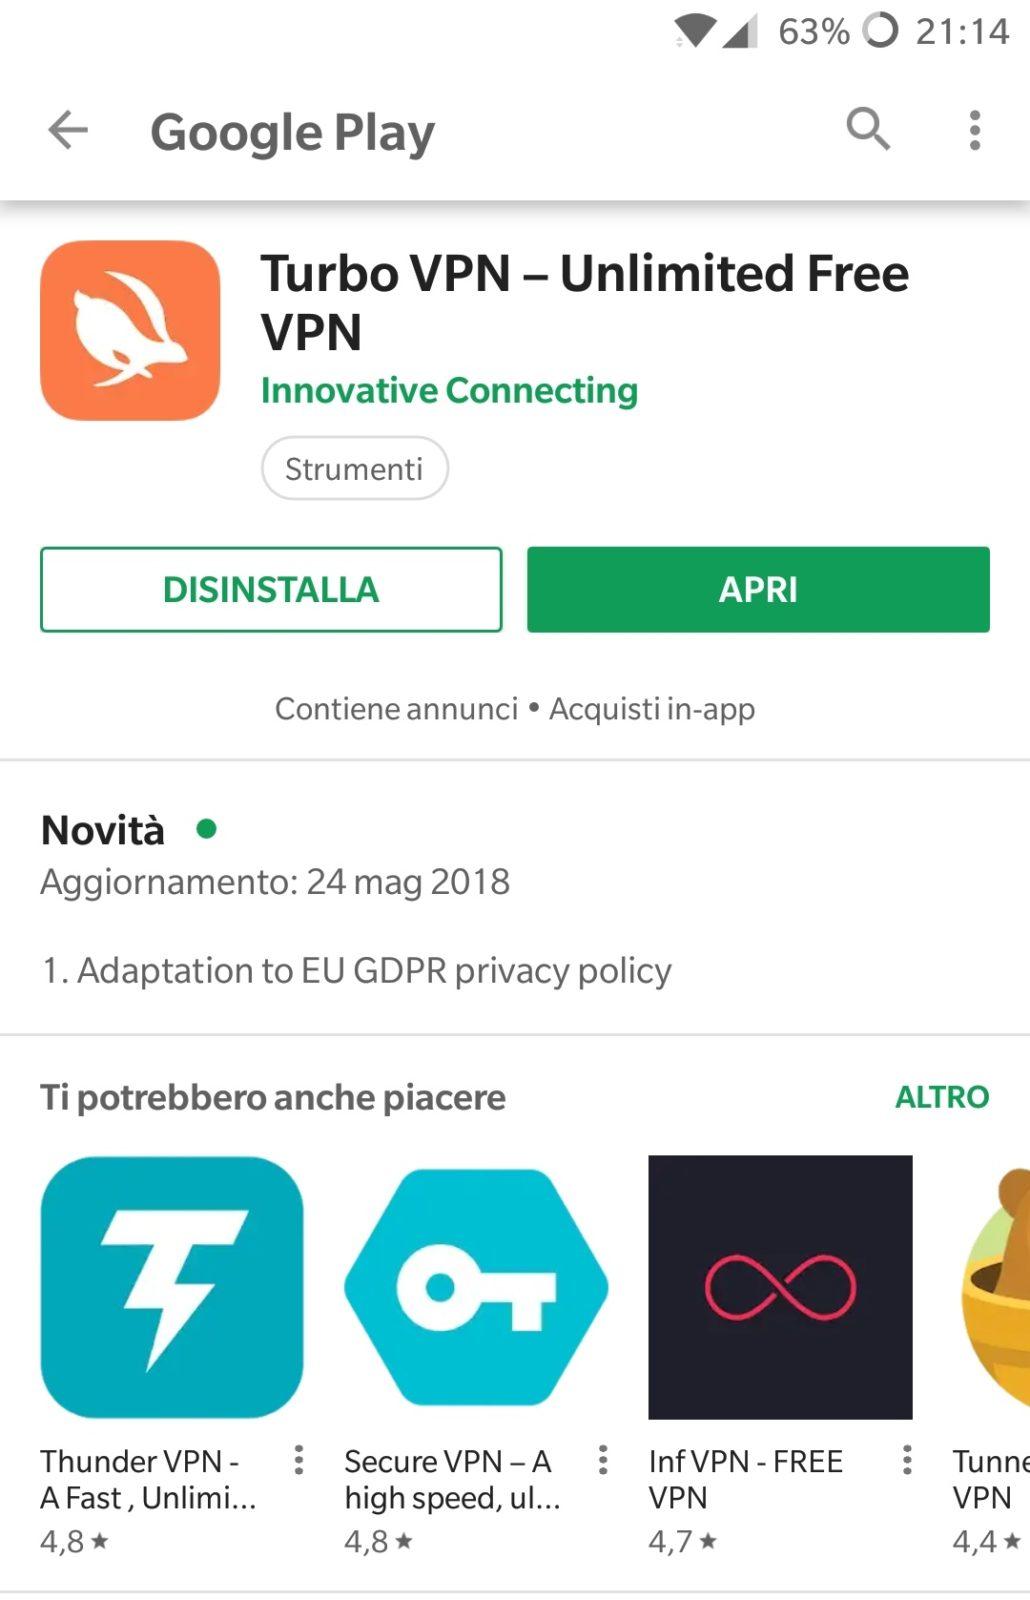 Turbo VPN è disponibile gratuitamente sul Play Store